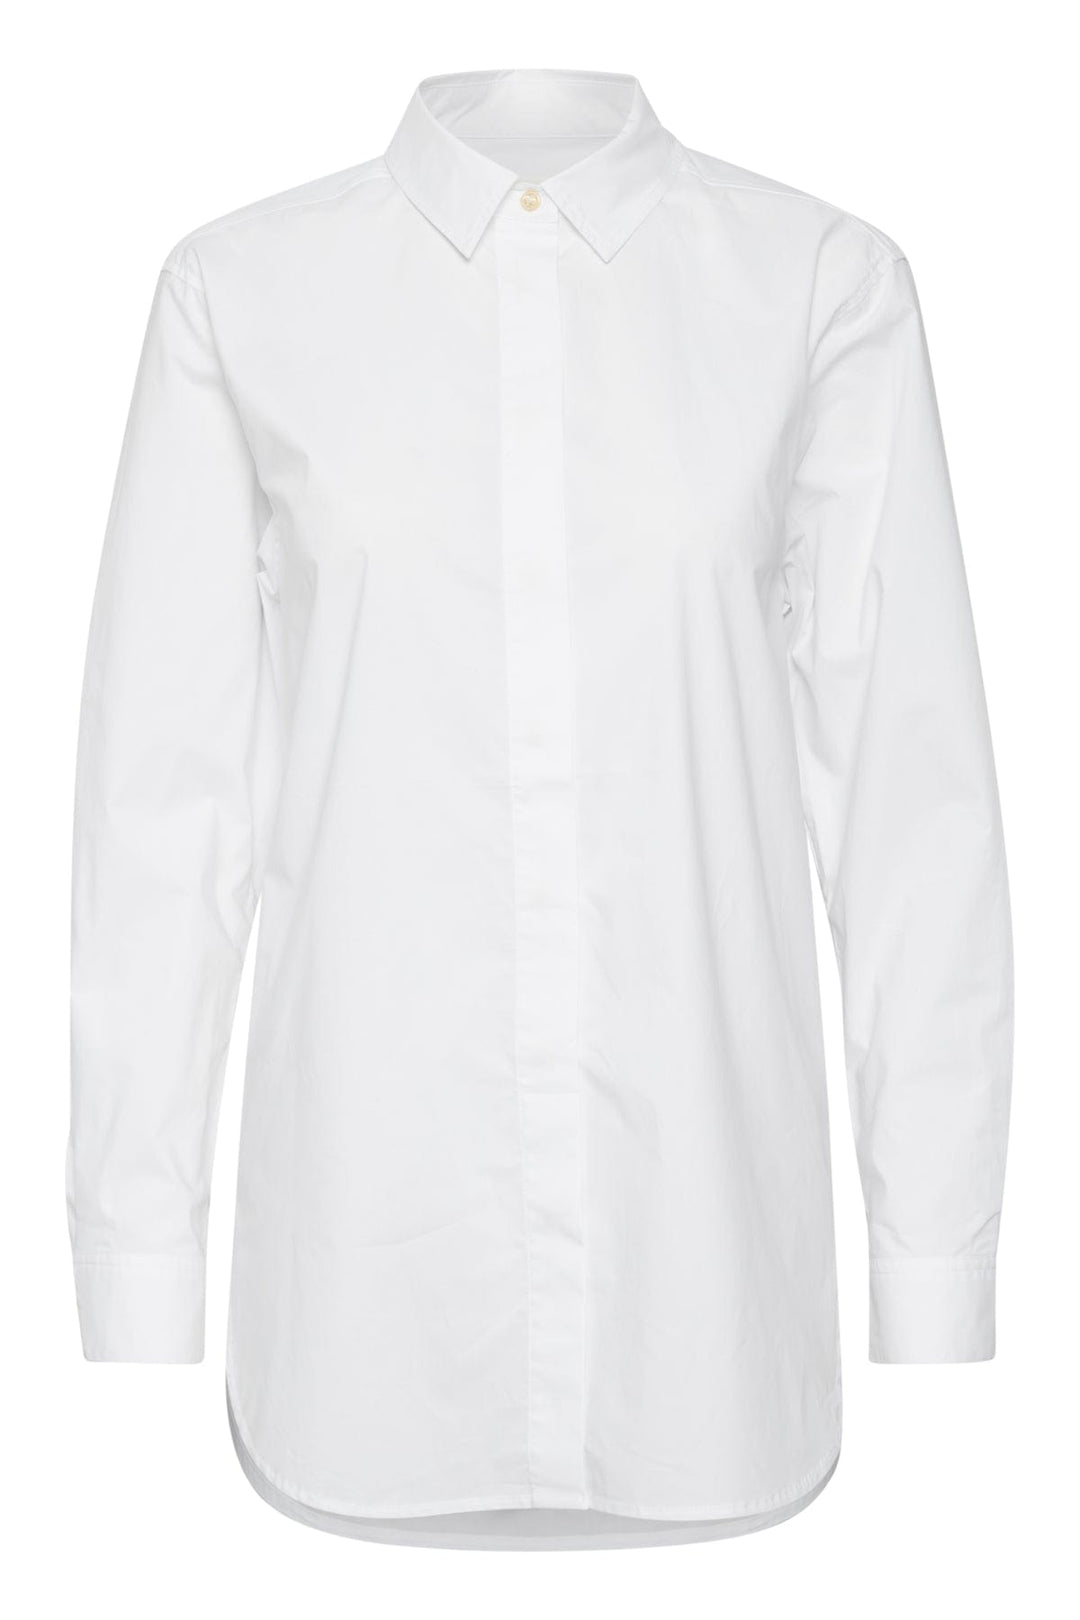 Leanapw Shirt | Skjorter og bluser | Smuk - Dameklær på nett